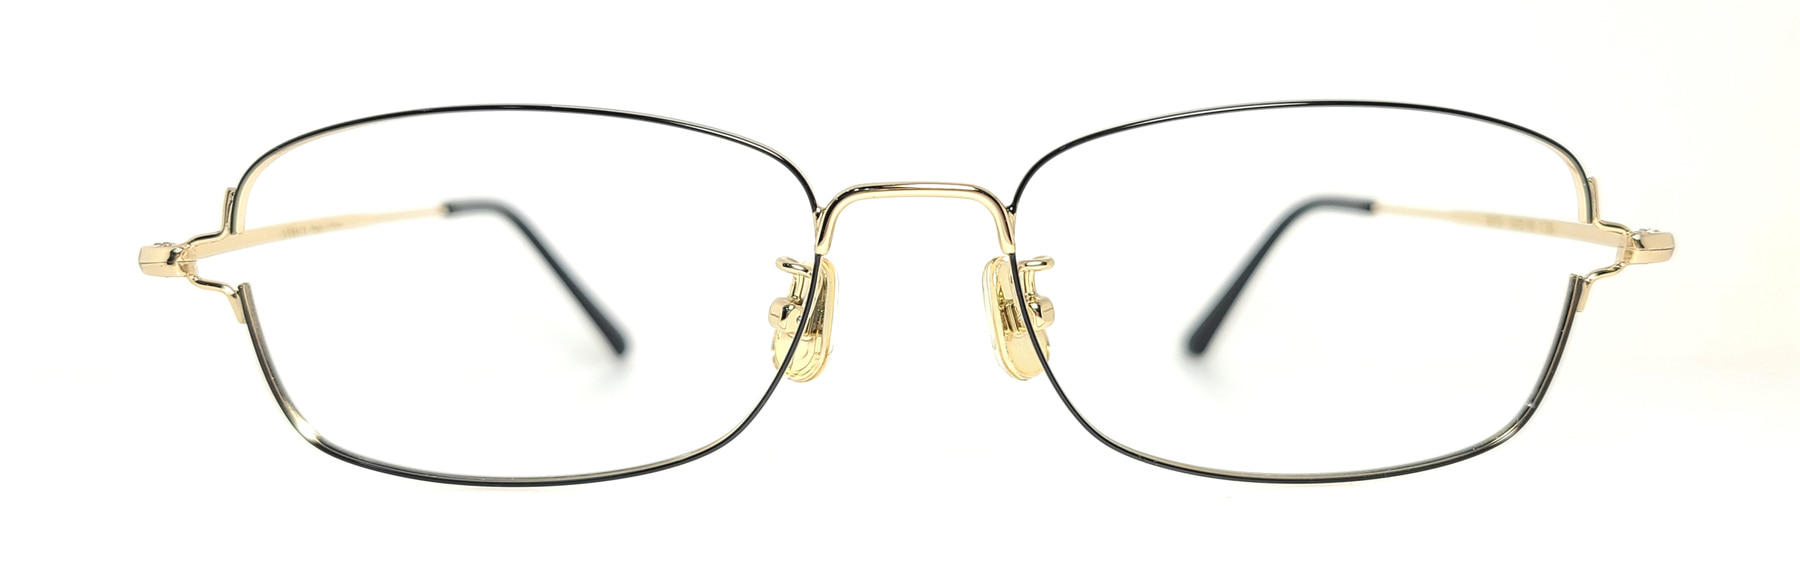 LUBECK 3013, Korean glasses, sunglasses, eyeglasses, glasses